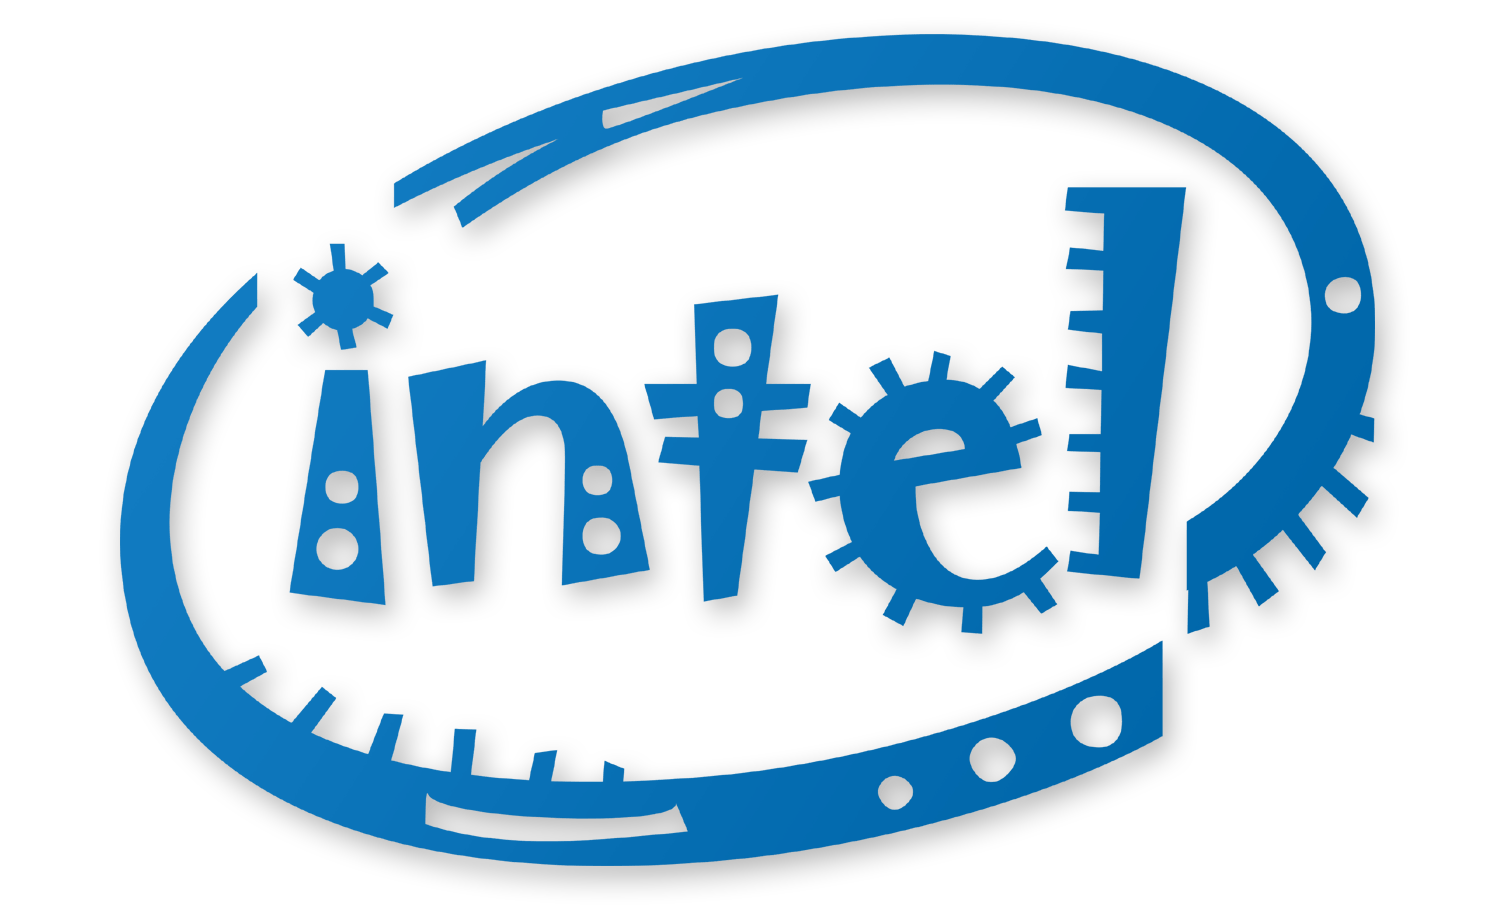 All Intel Logo - Intel Png Logo - Free Transparent PNG Logos